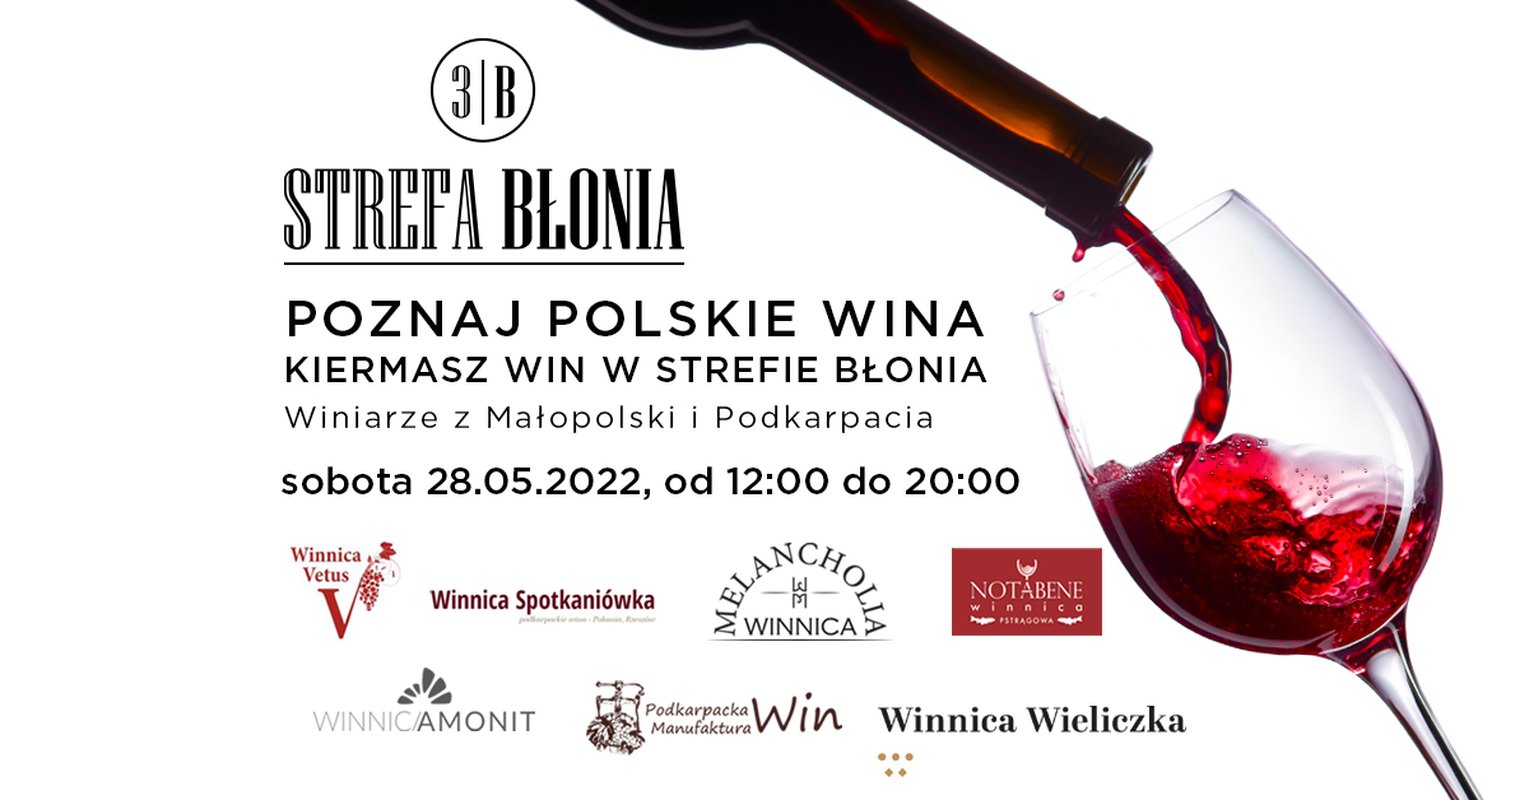 Wiosna z polskim winem, kiermasz win w Strefie Błonia